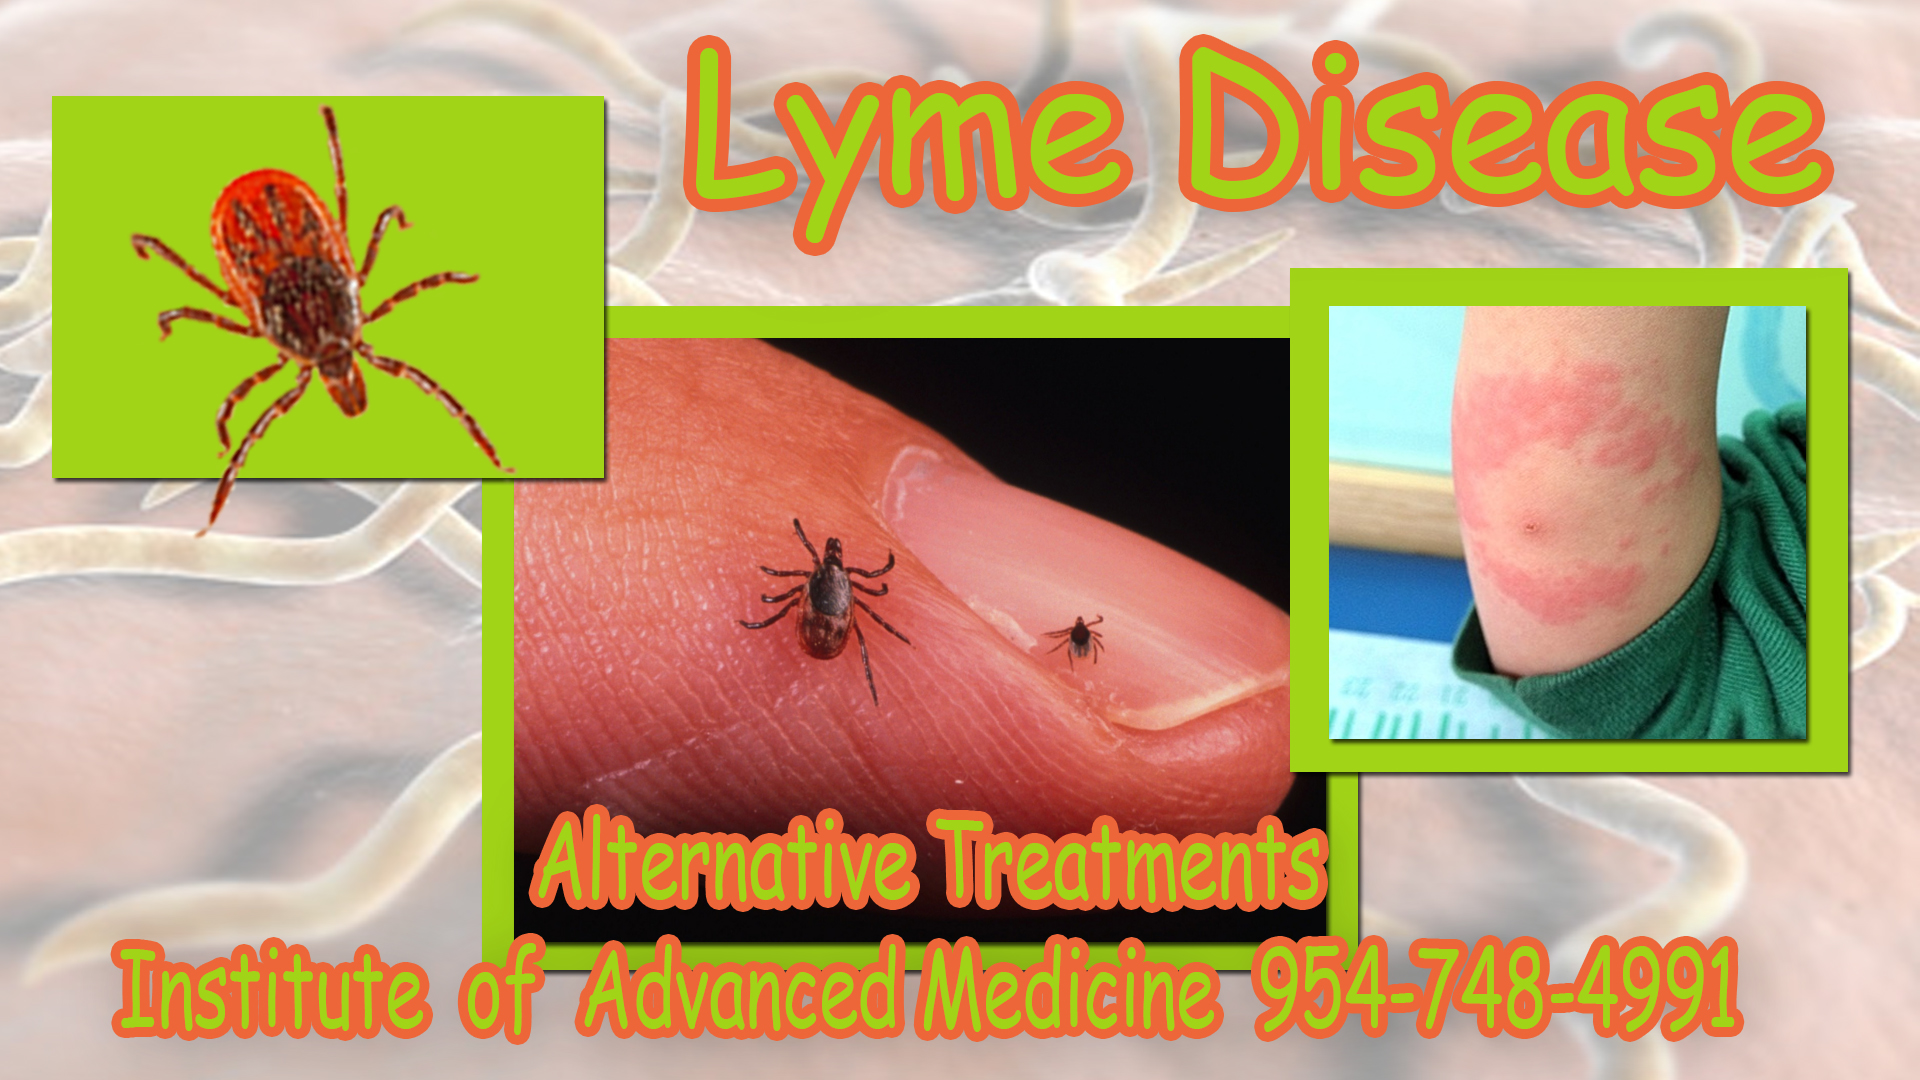 Lyme Disease 